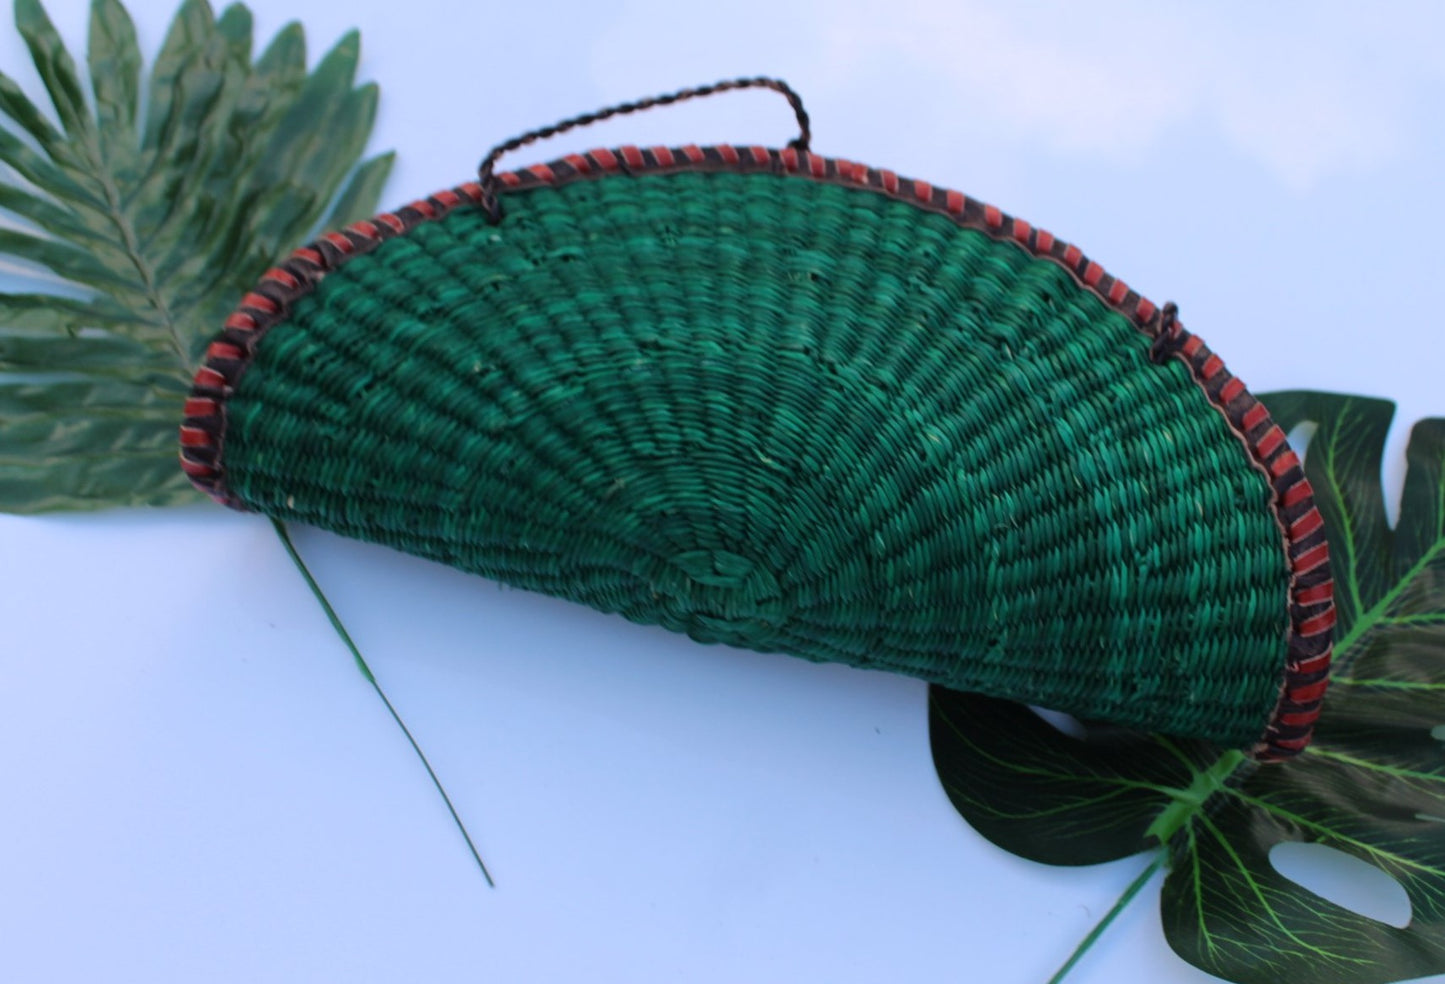 Fan shaped green straw bag